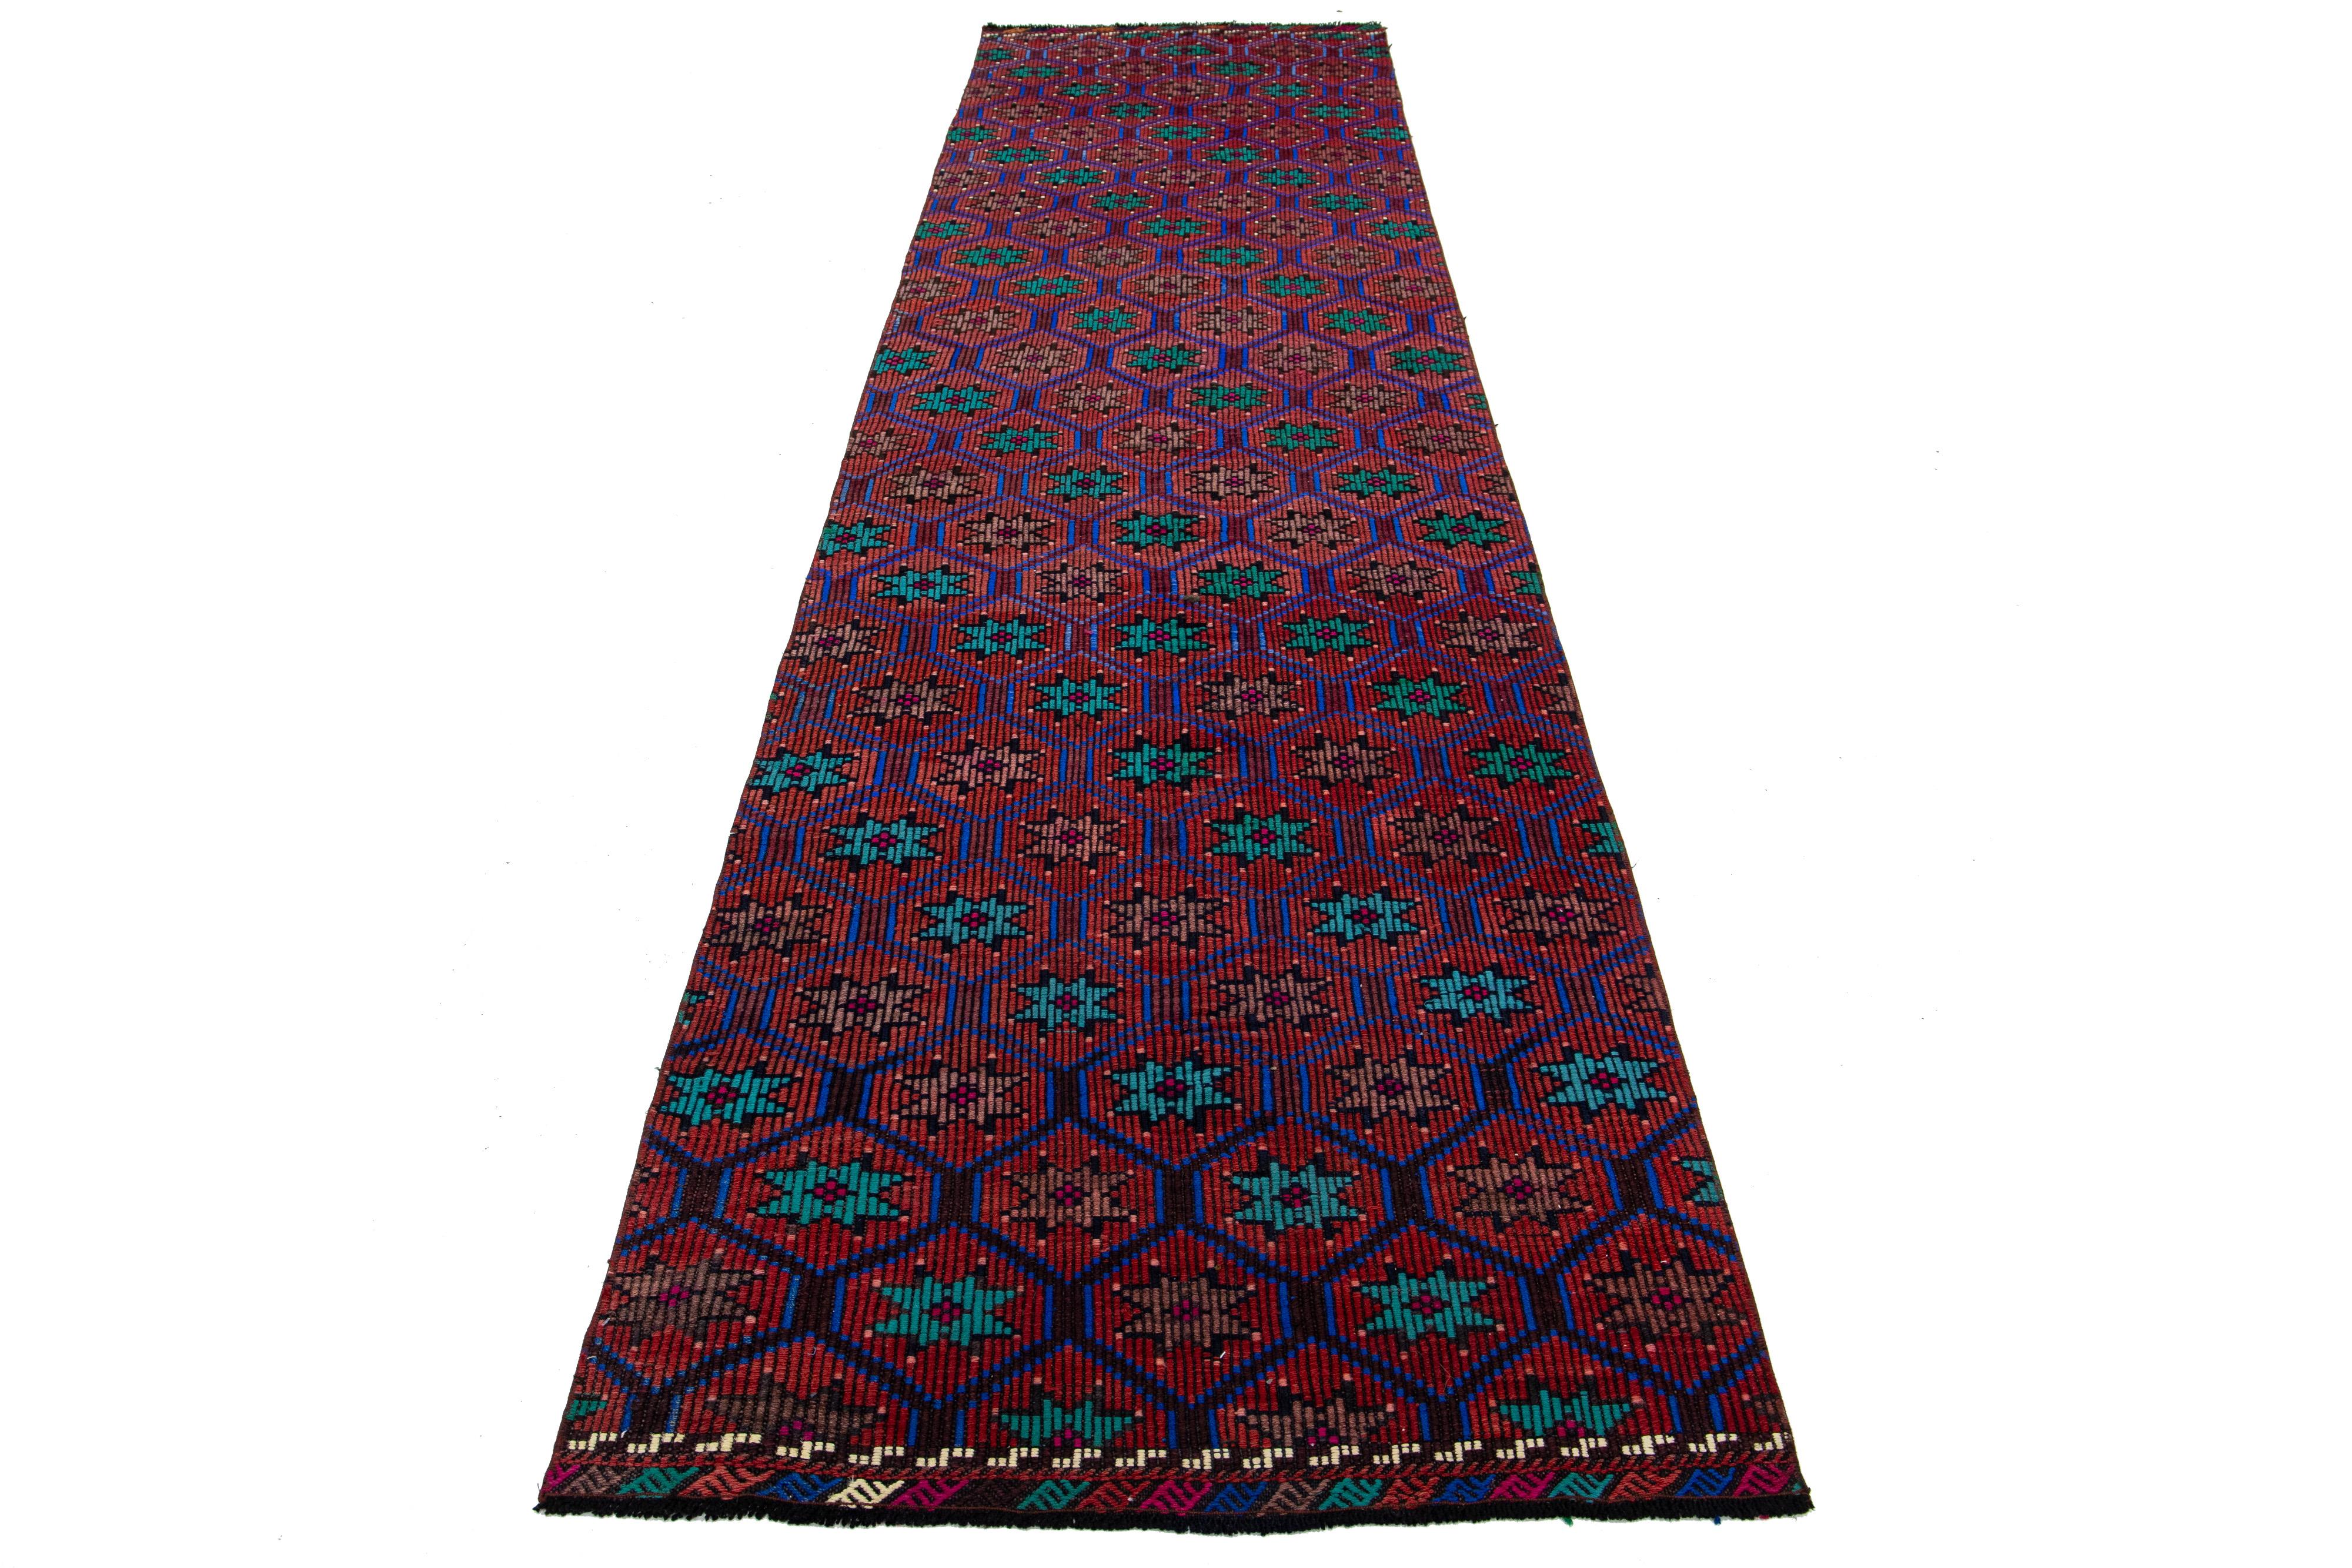 Ce magnifique tapis kilim en laine présente un étonnant design géométrique sur tout le pourtour, avec des accents multicolores vibrants sur un fond rouille foncé.

Ce tapis mesure 3'2